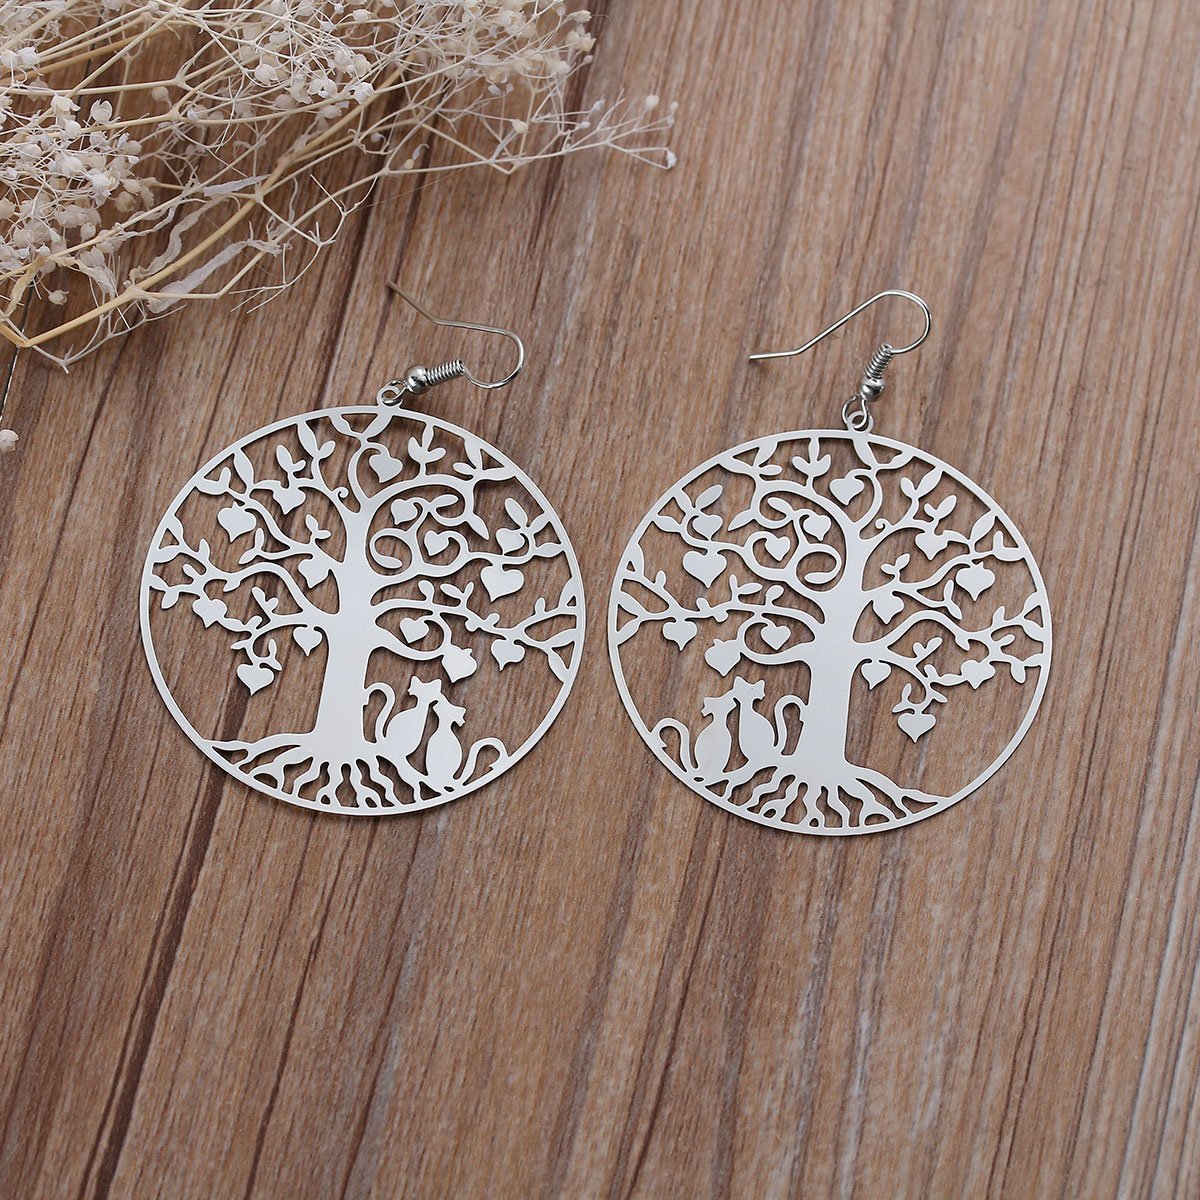 Silver Heart Tree Earrings - My Custom Tee Party